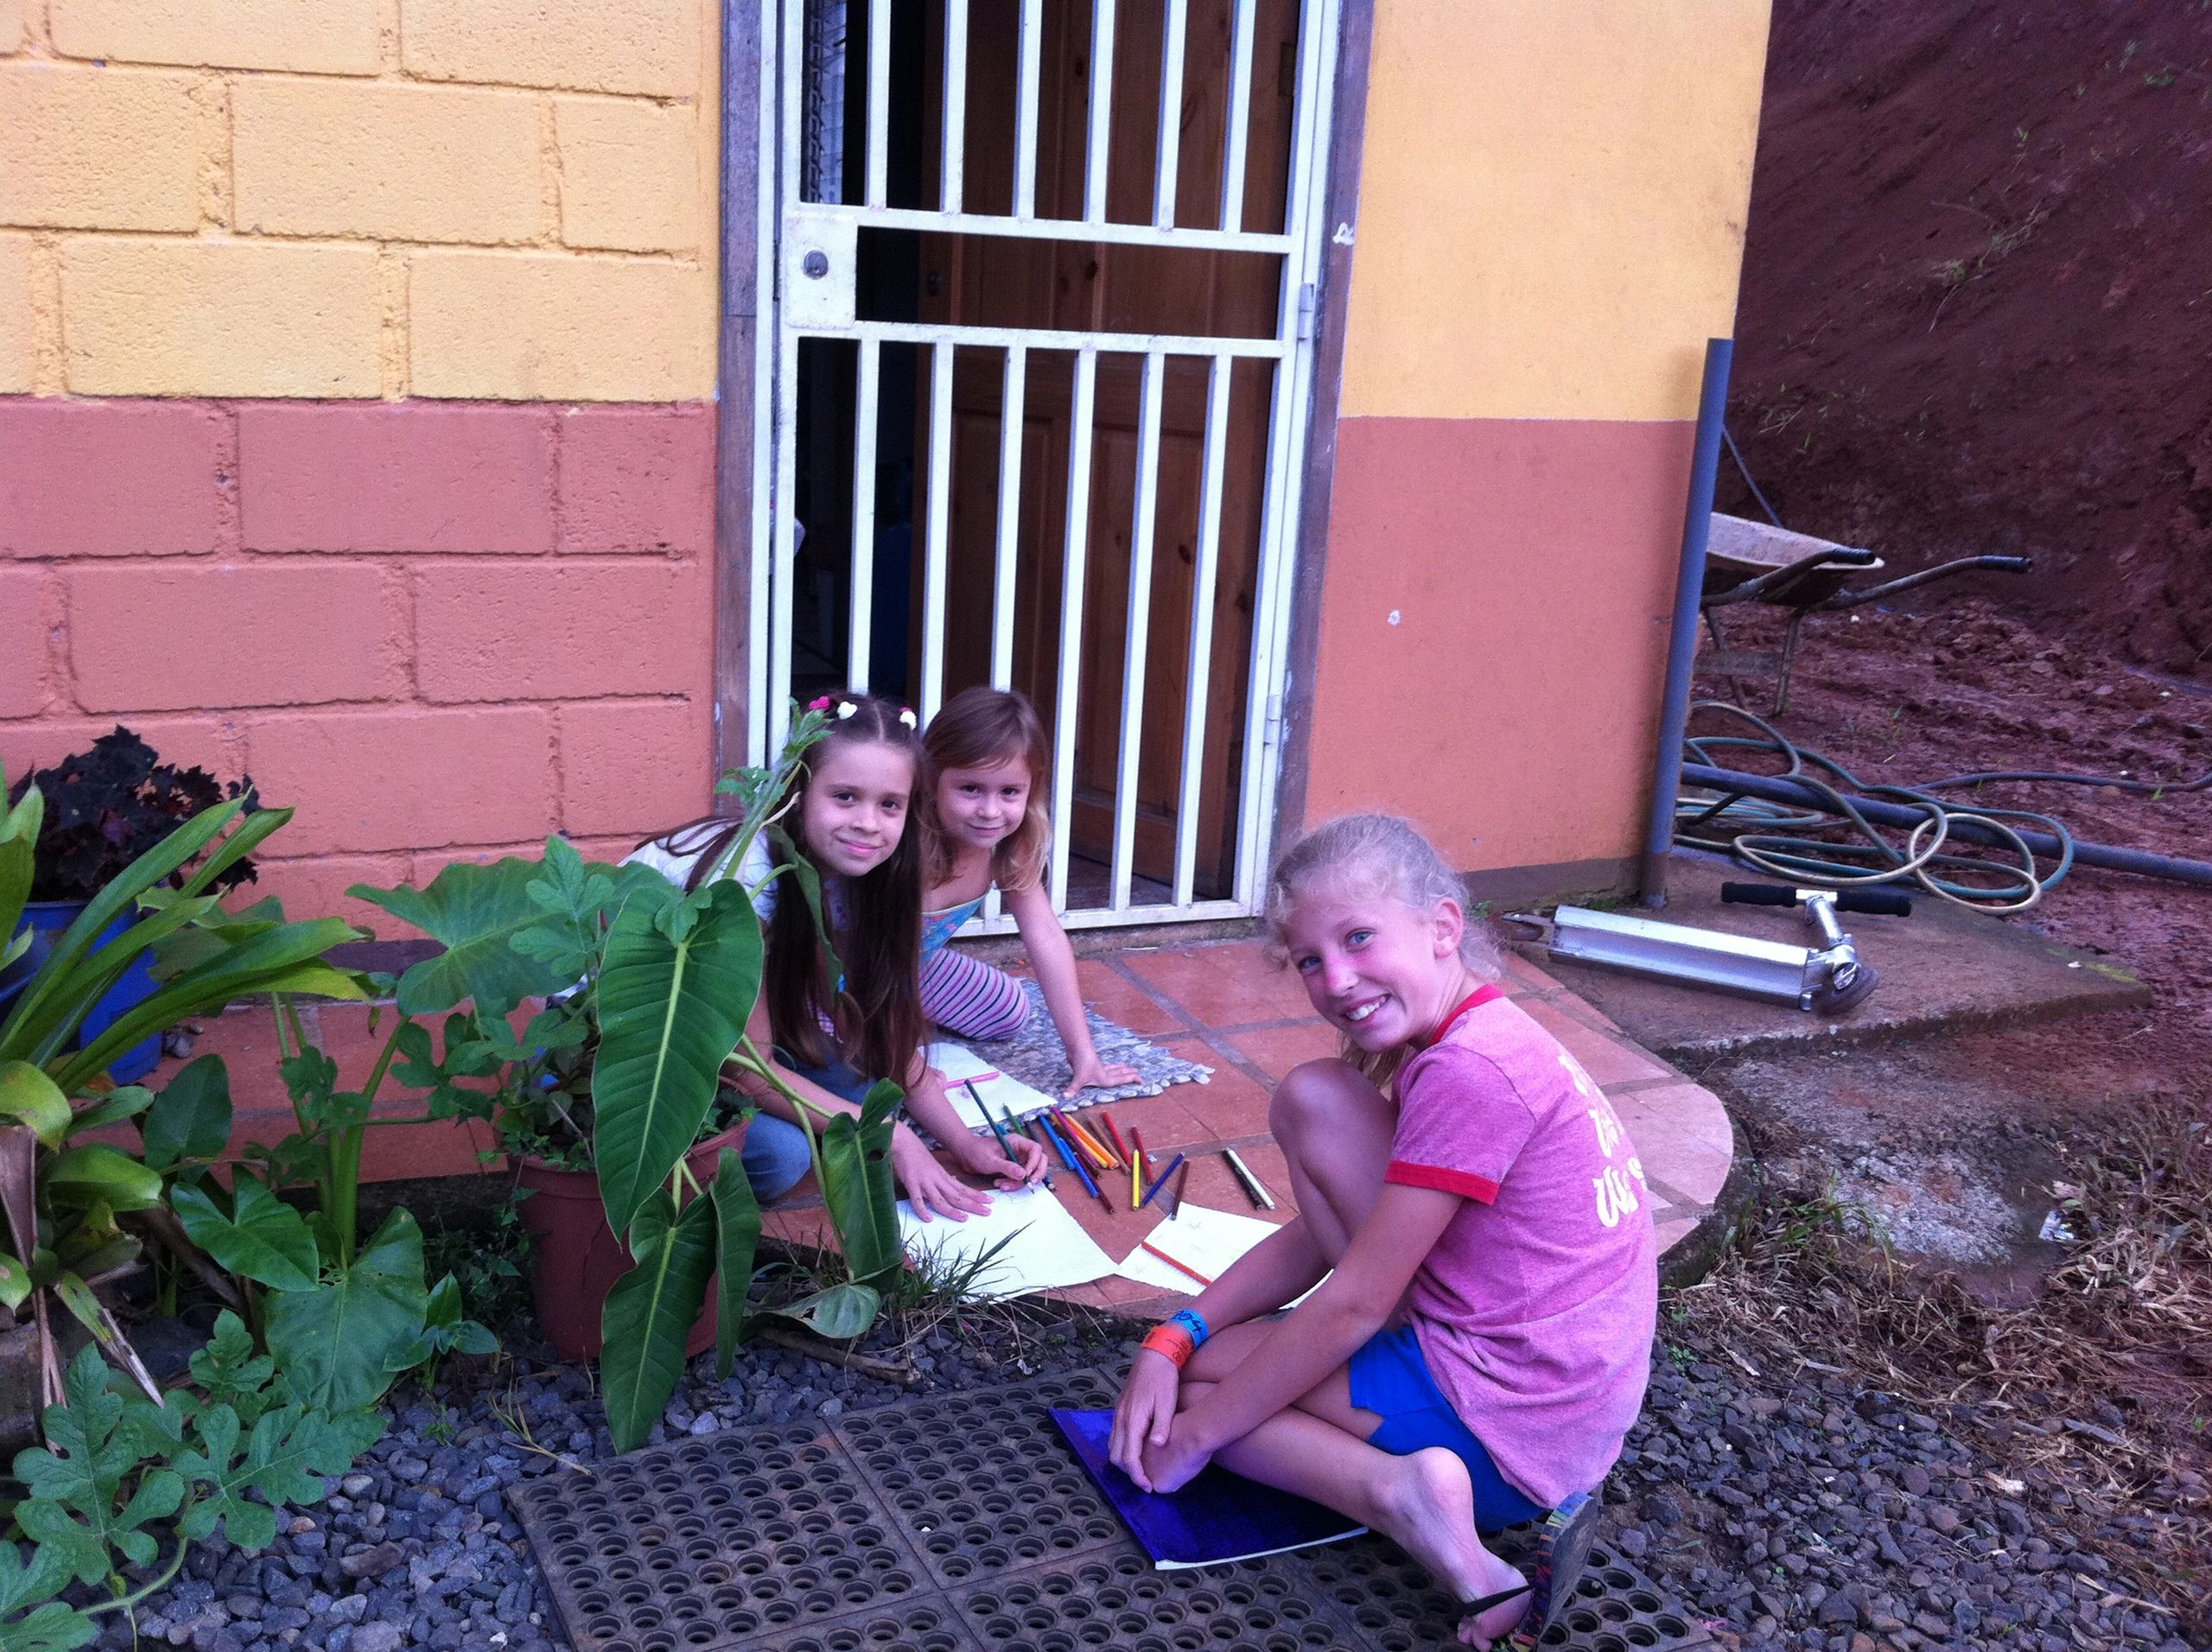 Katie gave her art supplies to the children she met in Costa Rica